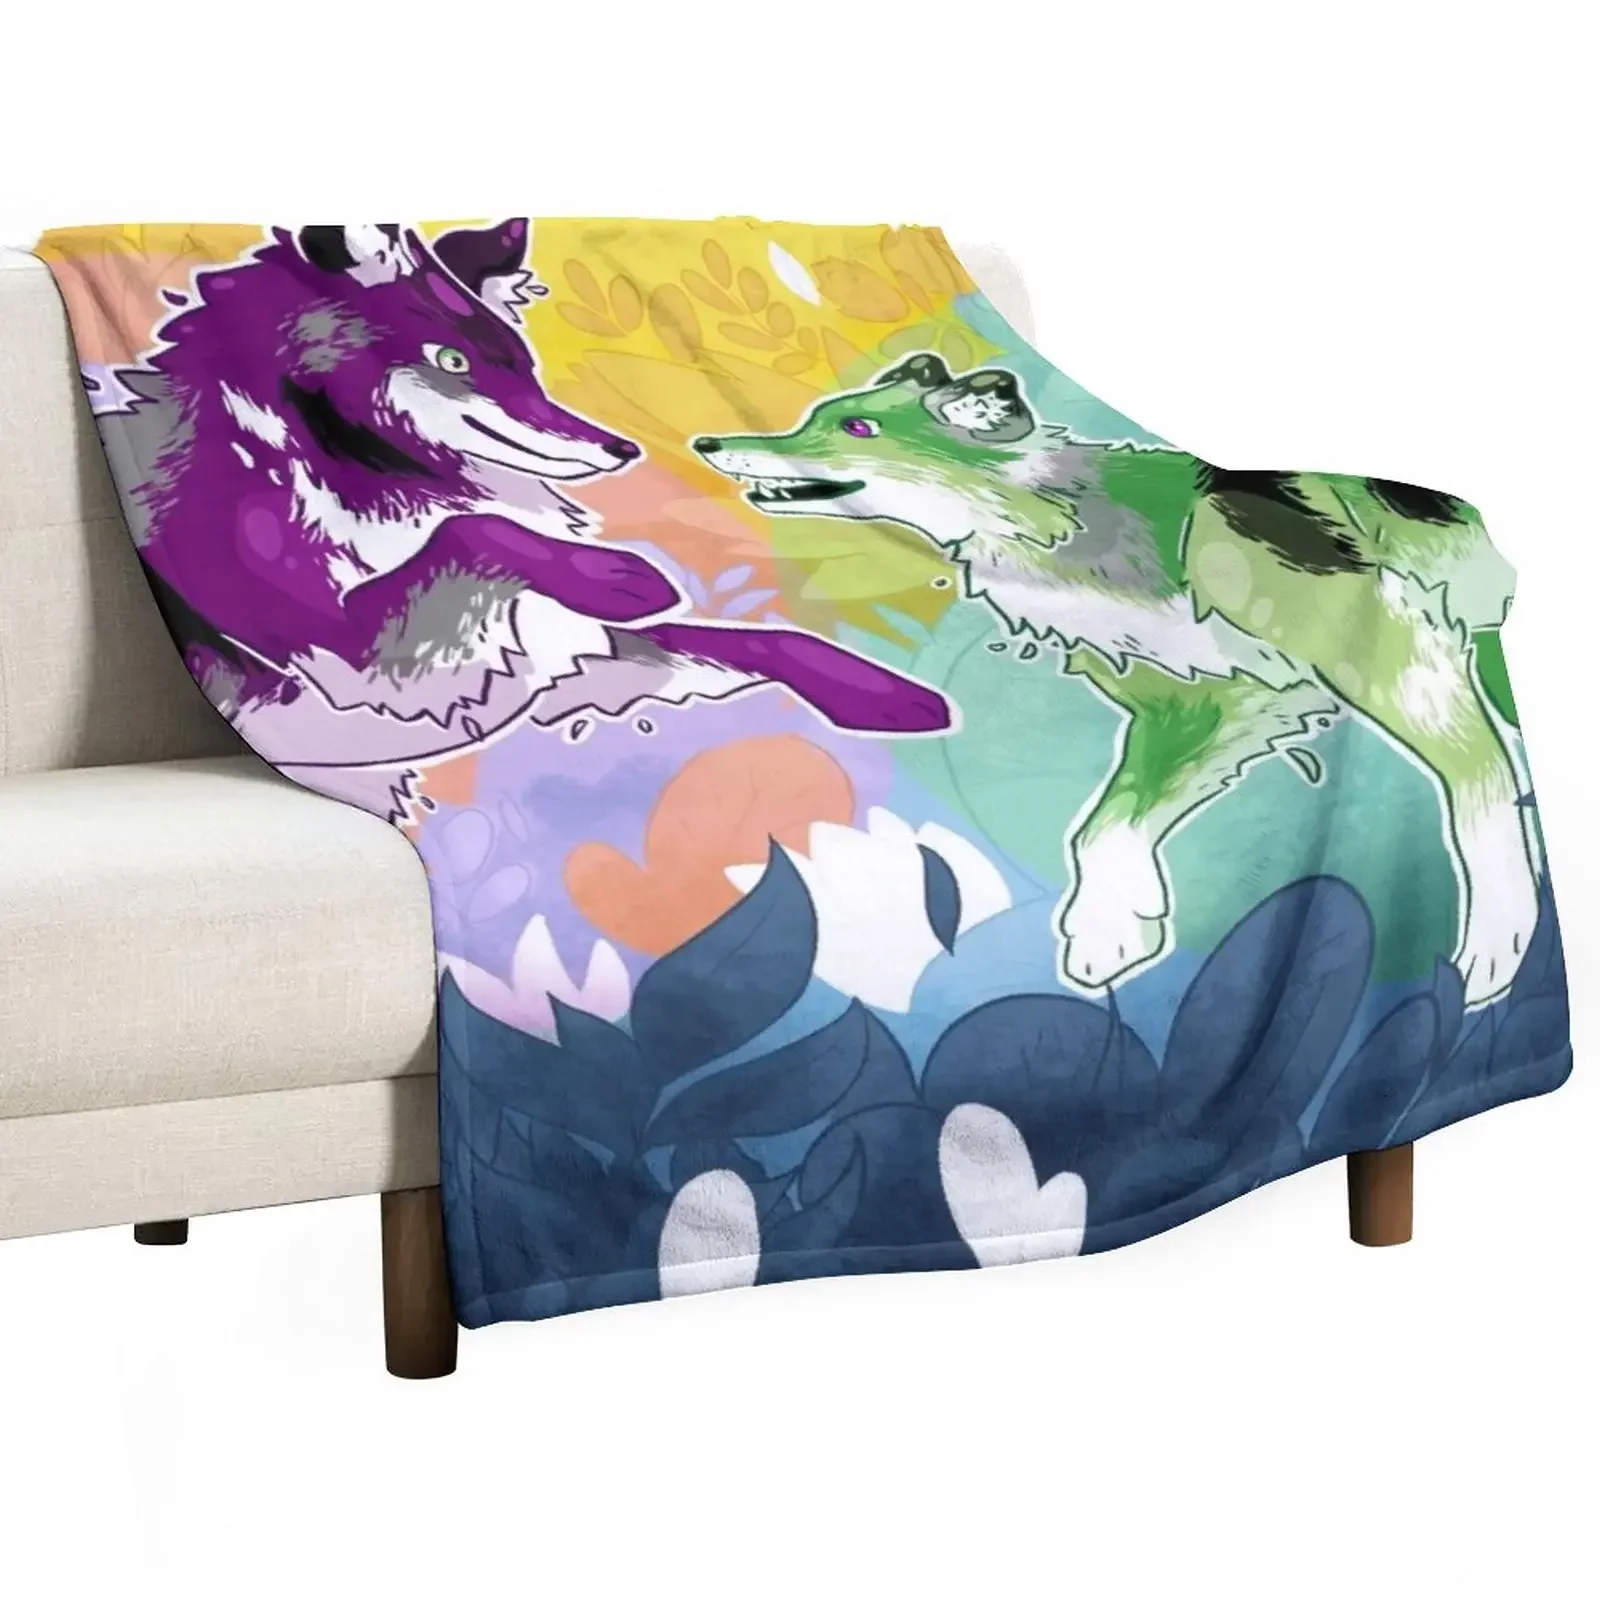 

Декоративное одеяло для танцев Aro/Ace Wolf, плед на диван, клетчатые одеяла для кровати